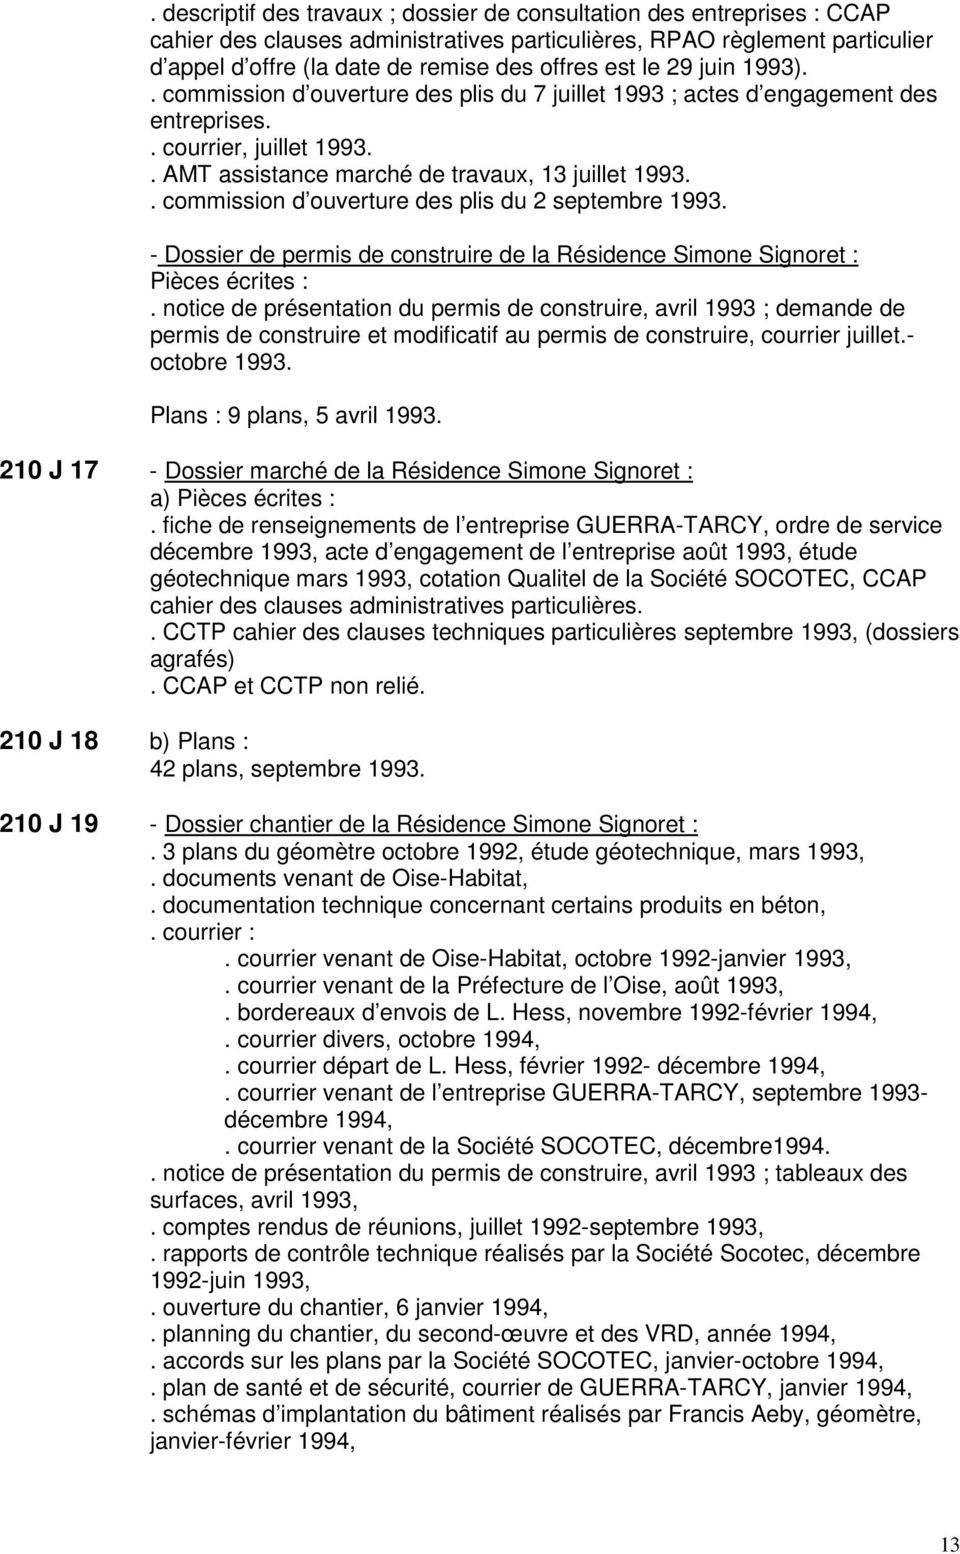 . commission d ouverture des plis du 2 septembre 1993. - Dossier de permis de construire de la Résidence Simone Signoret : Pièces écrites :.